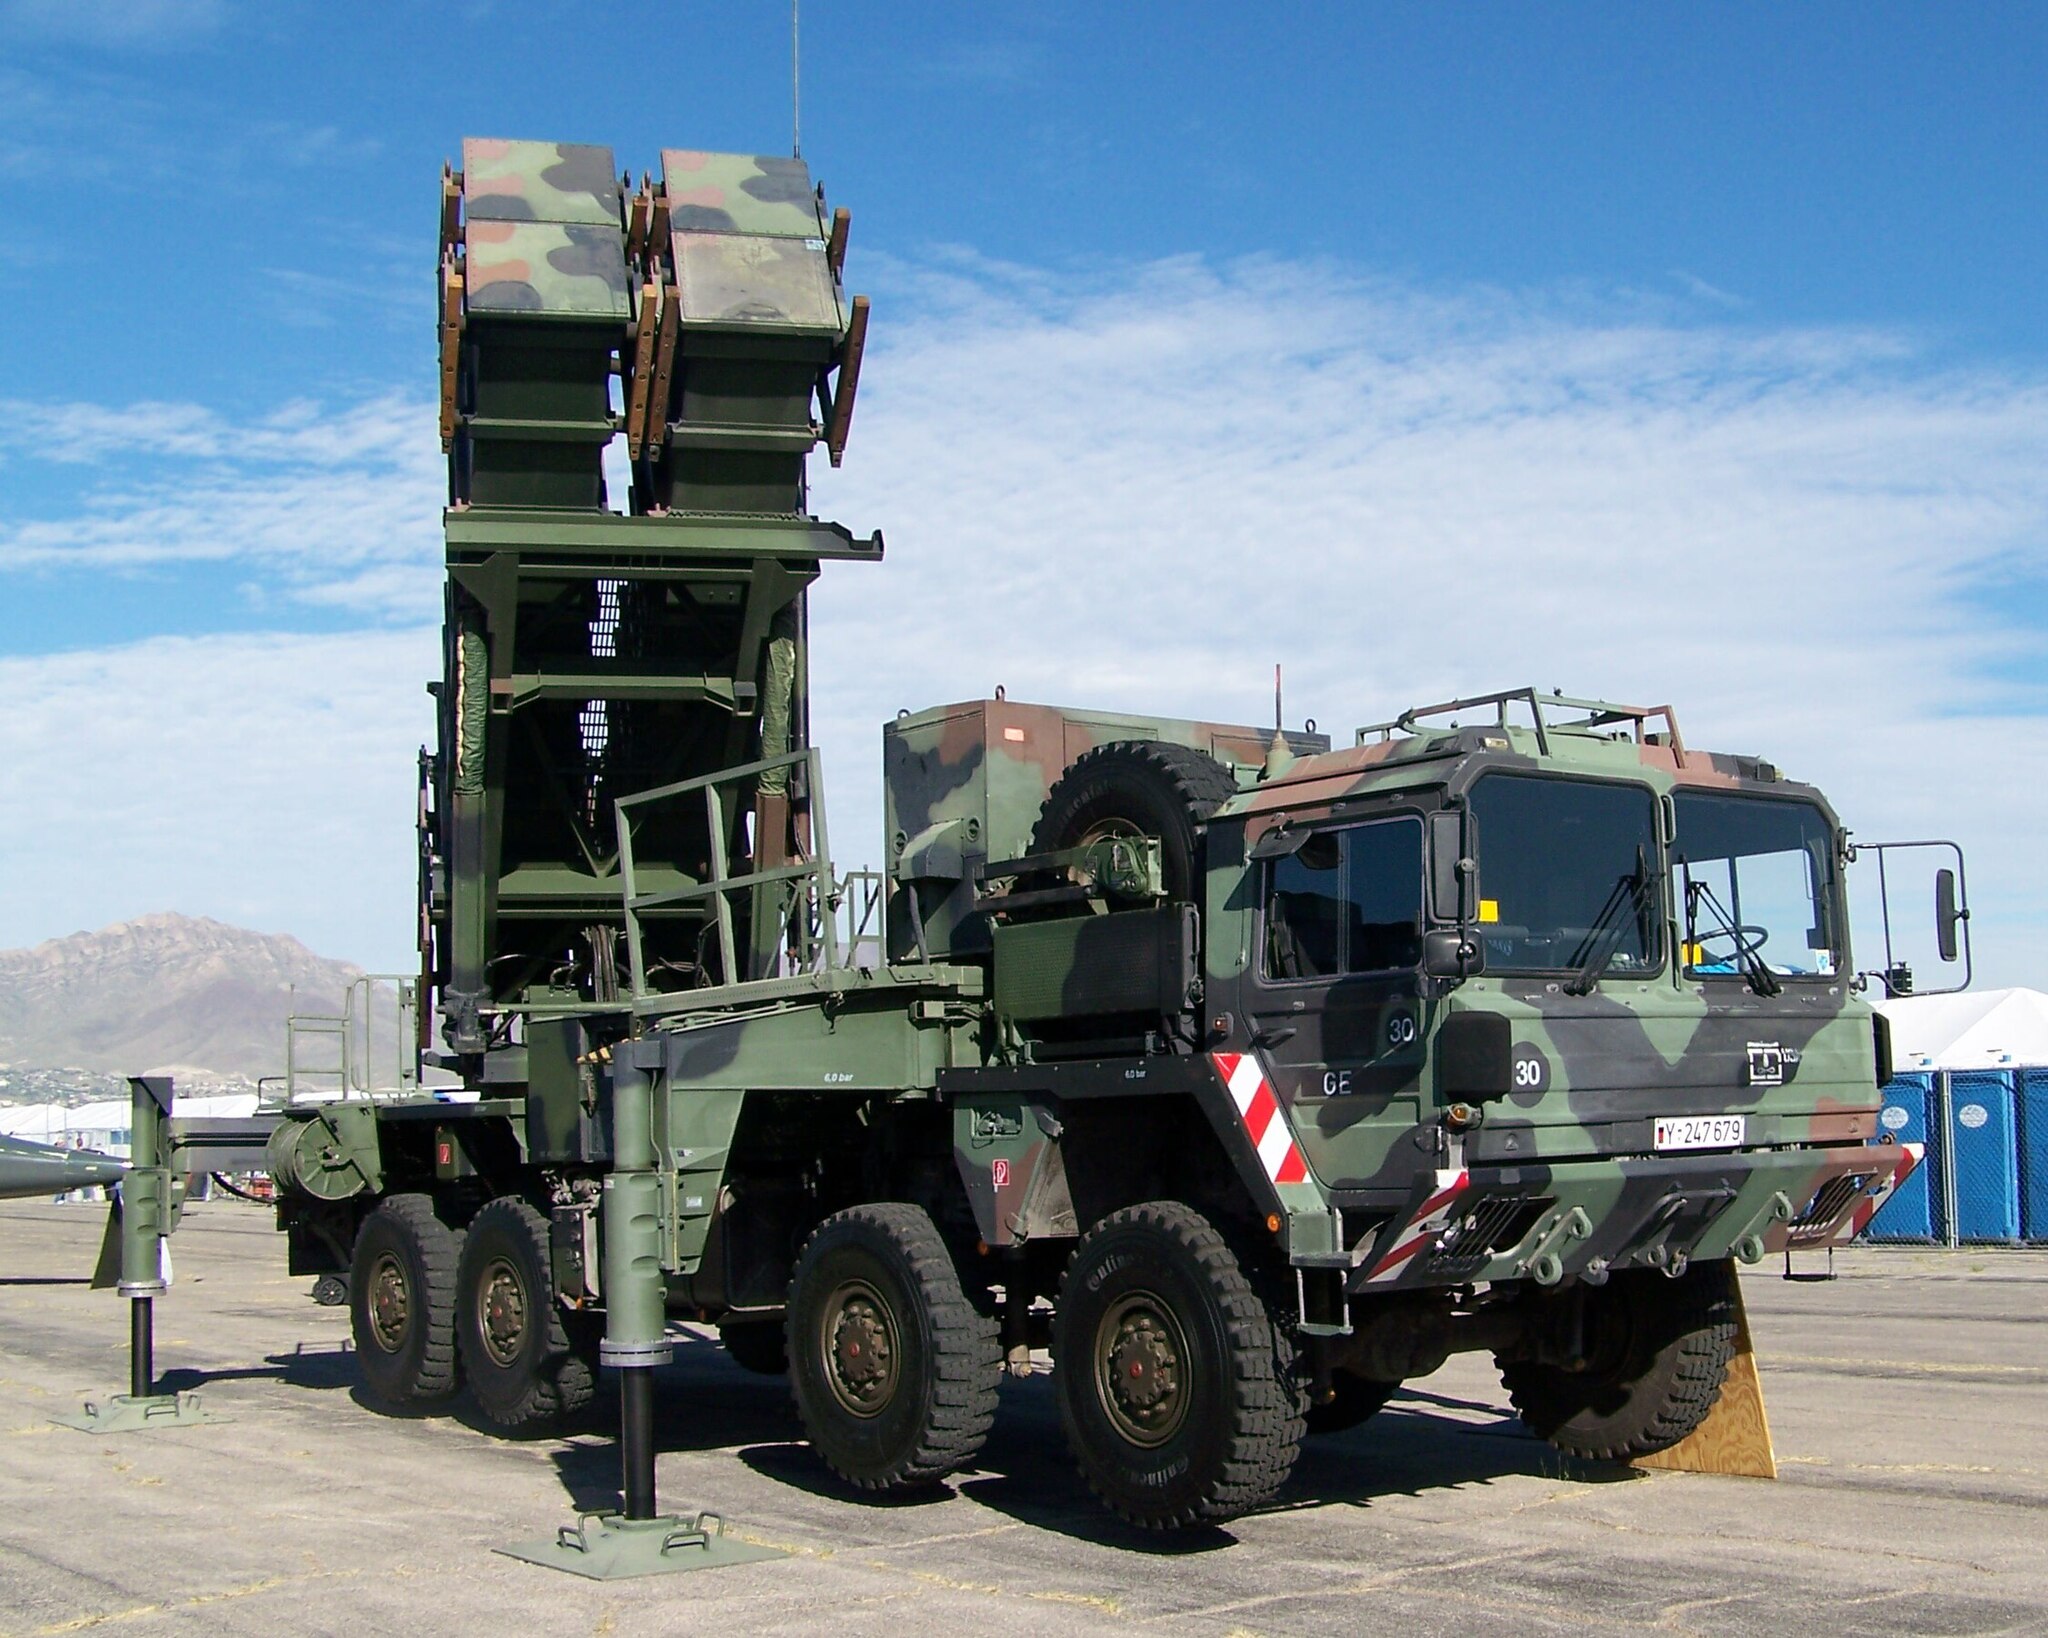 Bild: Mark Holloway from Beatty, Nevada, USA, German Patriot missile launcher (cropped), CC BY 2.0, via Wikimedia Commons, (keine Änderungen vorgenommen)